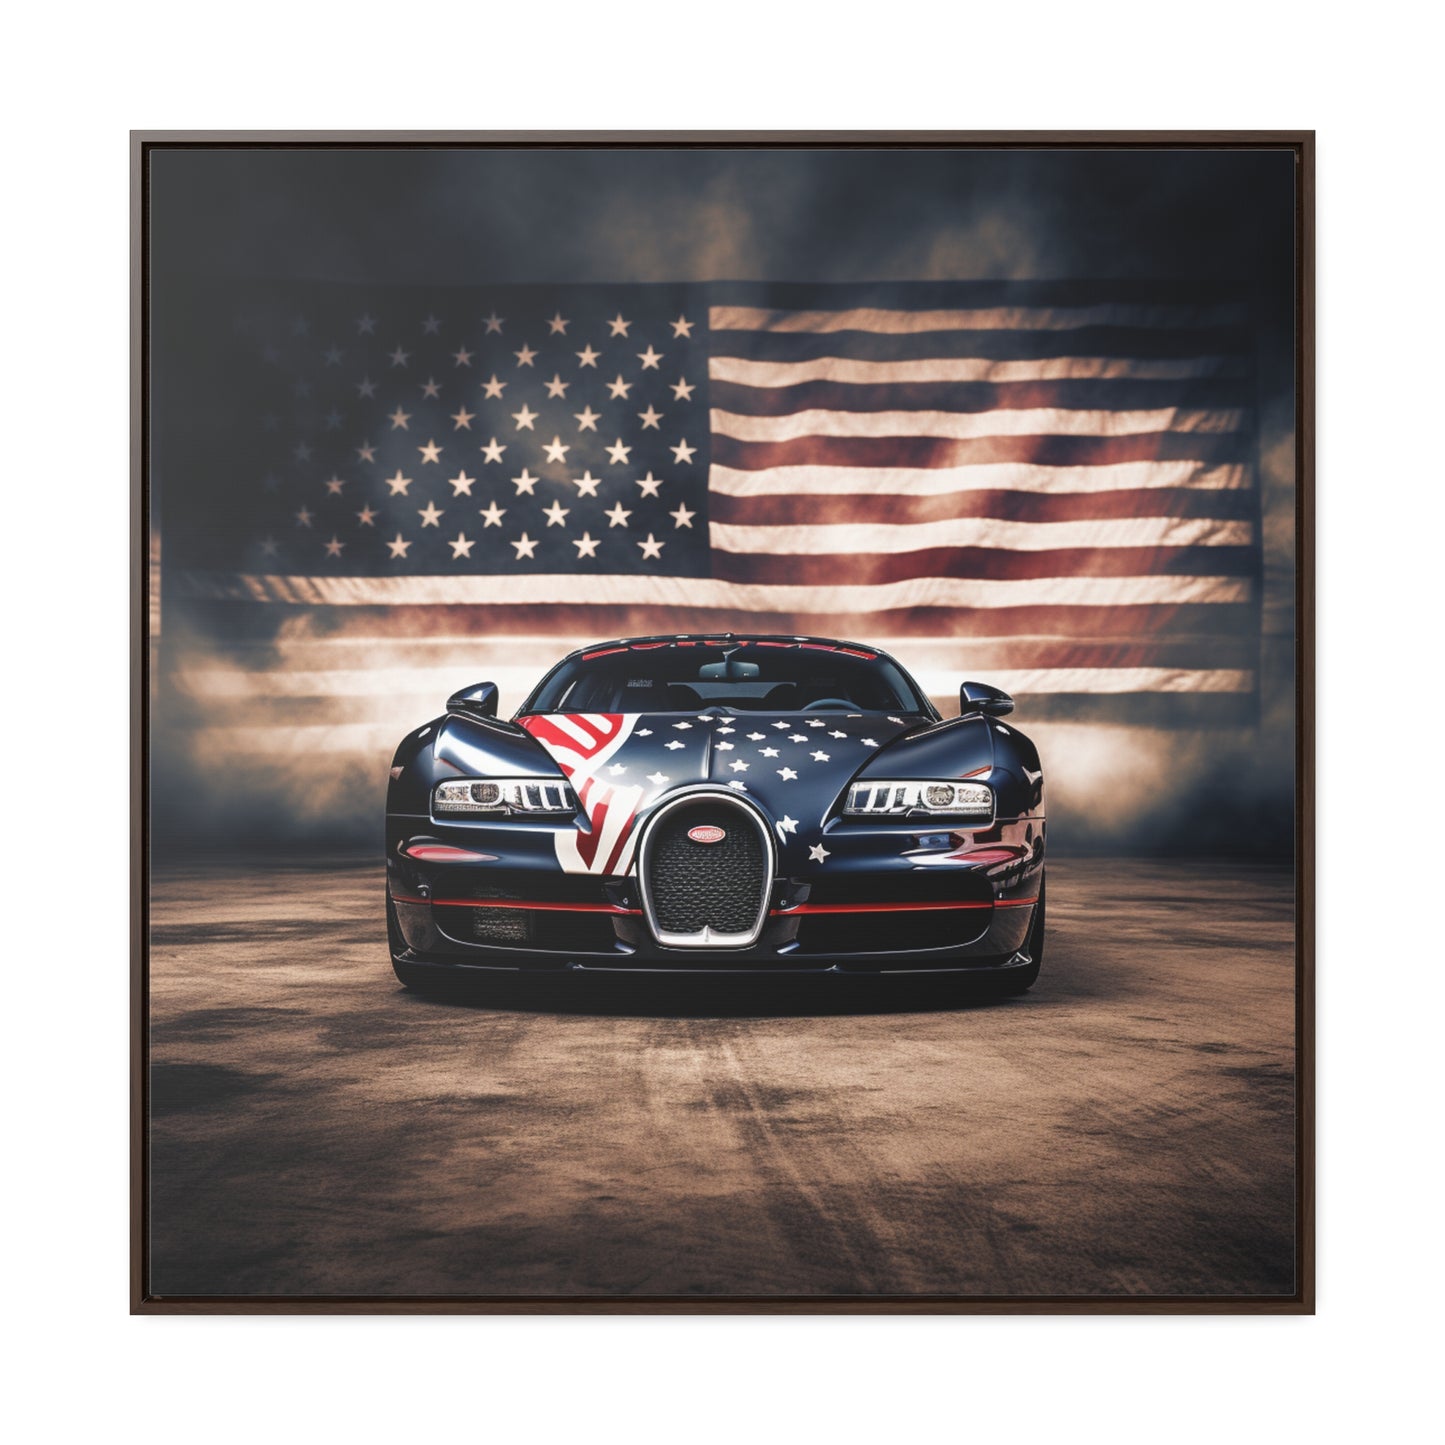 Gallery Canvas Wraps, Square Frame Bugatti American Flag 2